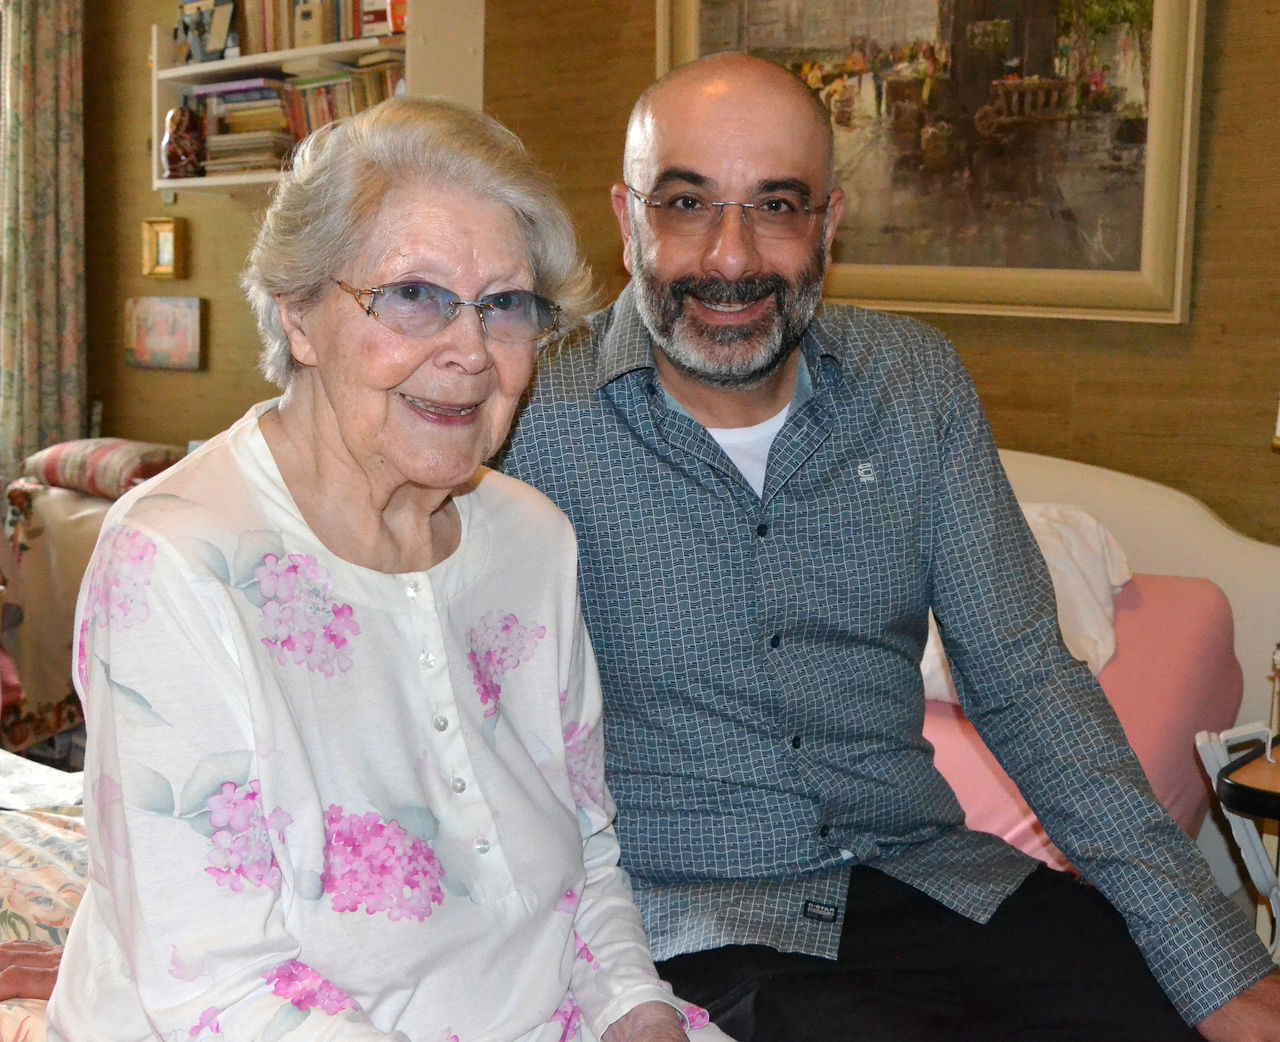 Chefarzt der Geriatrie feiert 100. Geburtstag einer treuen Patientin